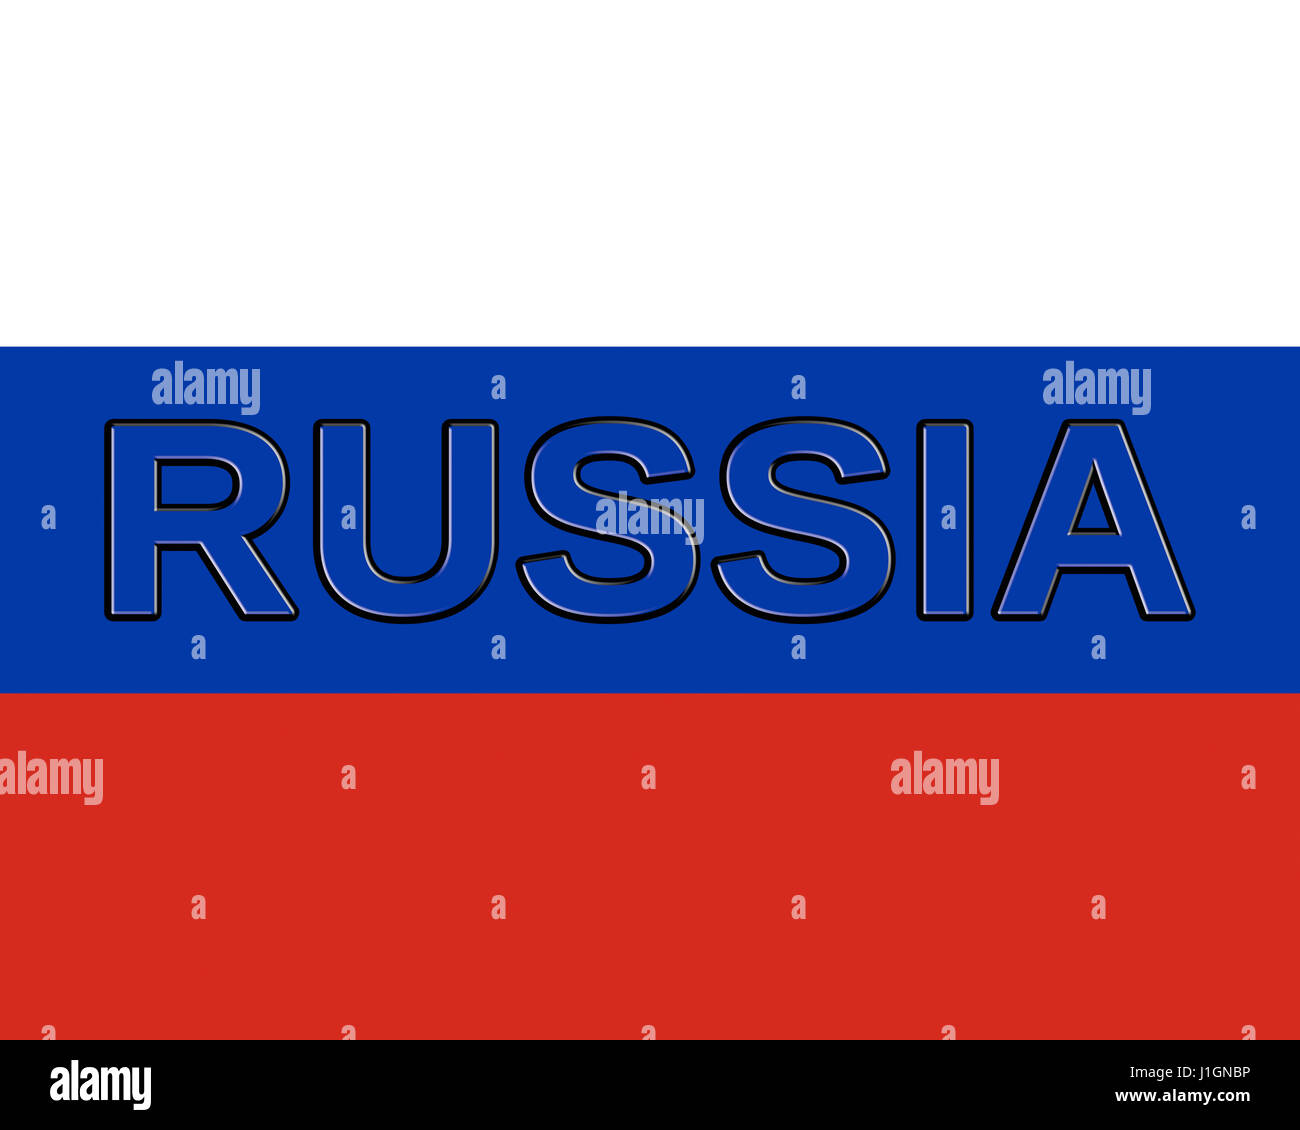 Abbildung der Staatsflagge der Russischen Föderation mit dem Land auf die Fahne geschrieben Stockfoto